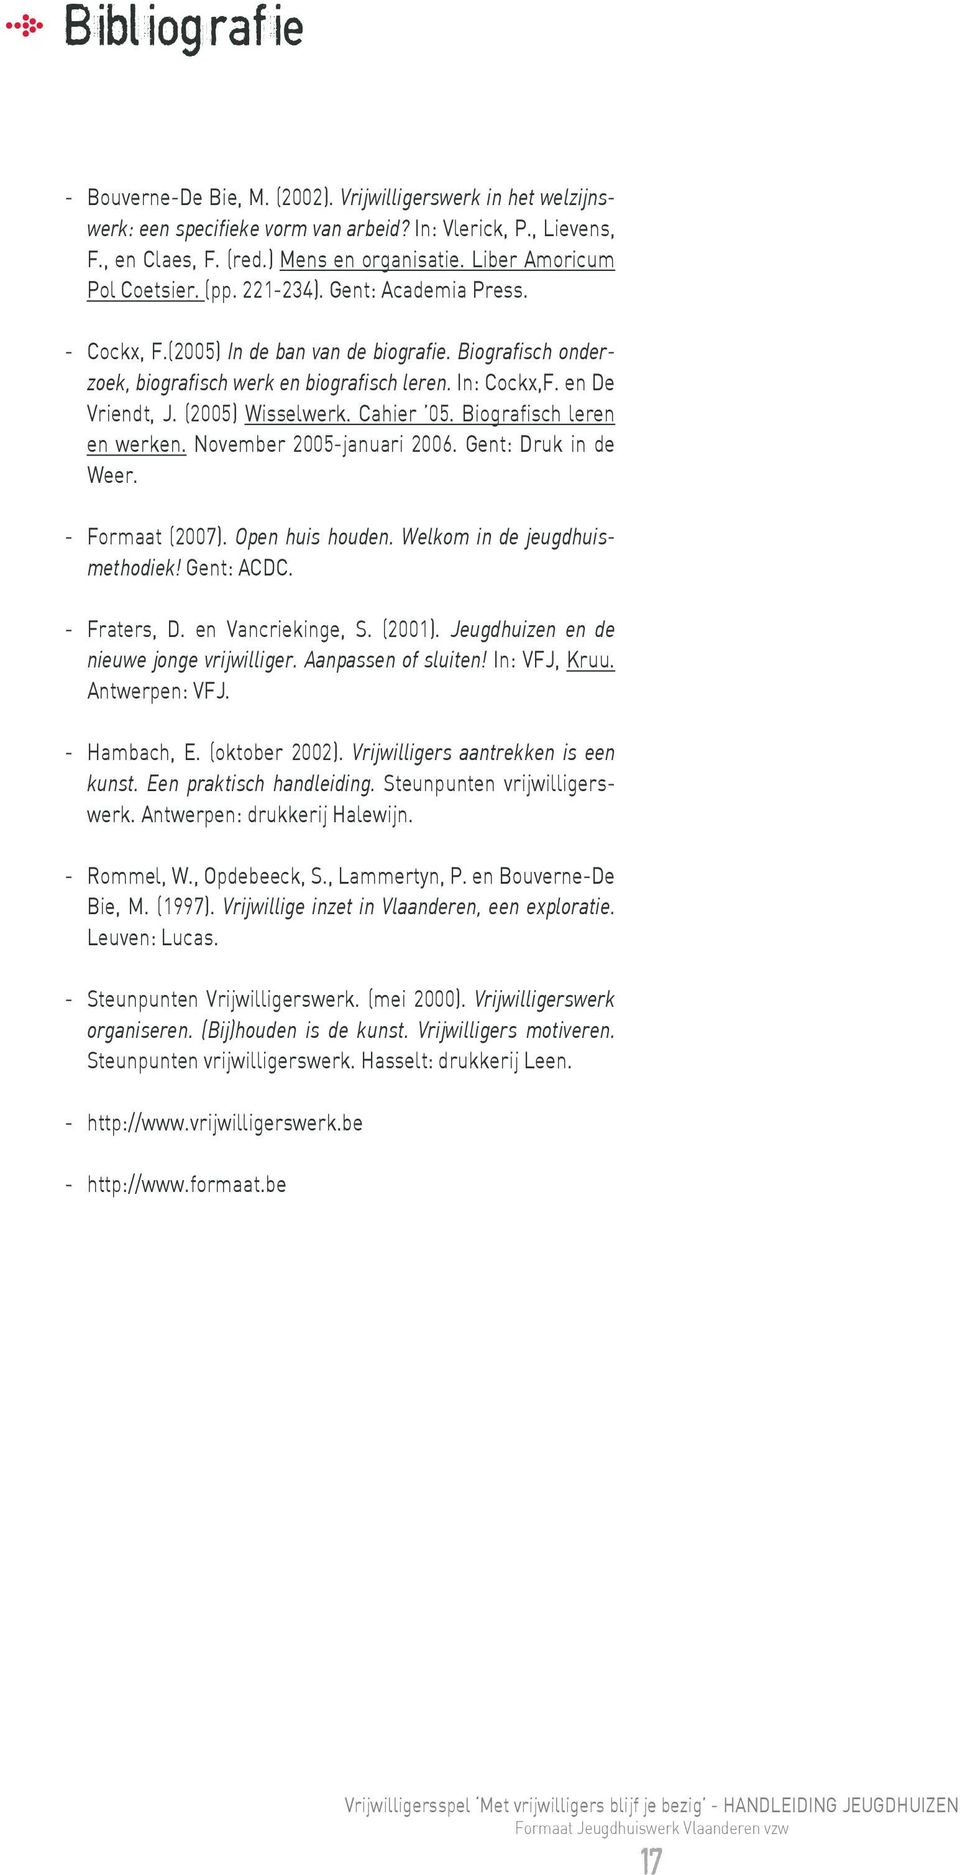 en De Vriendt, J. (2005) Wisselwerk. Cahier 05. Biografisch leren en werken. November 2005-januari 2006. Gent: Druk in de Weer. - Formaat (2007). Open huis houden. Welkom in de jeugdhuismethodiek!